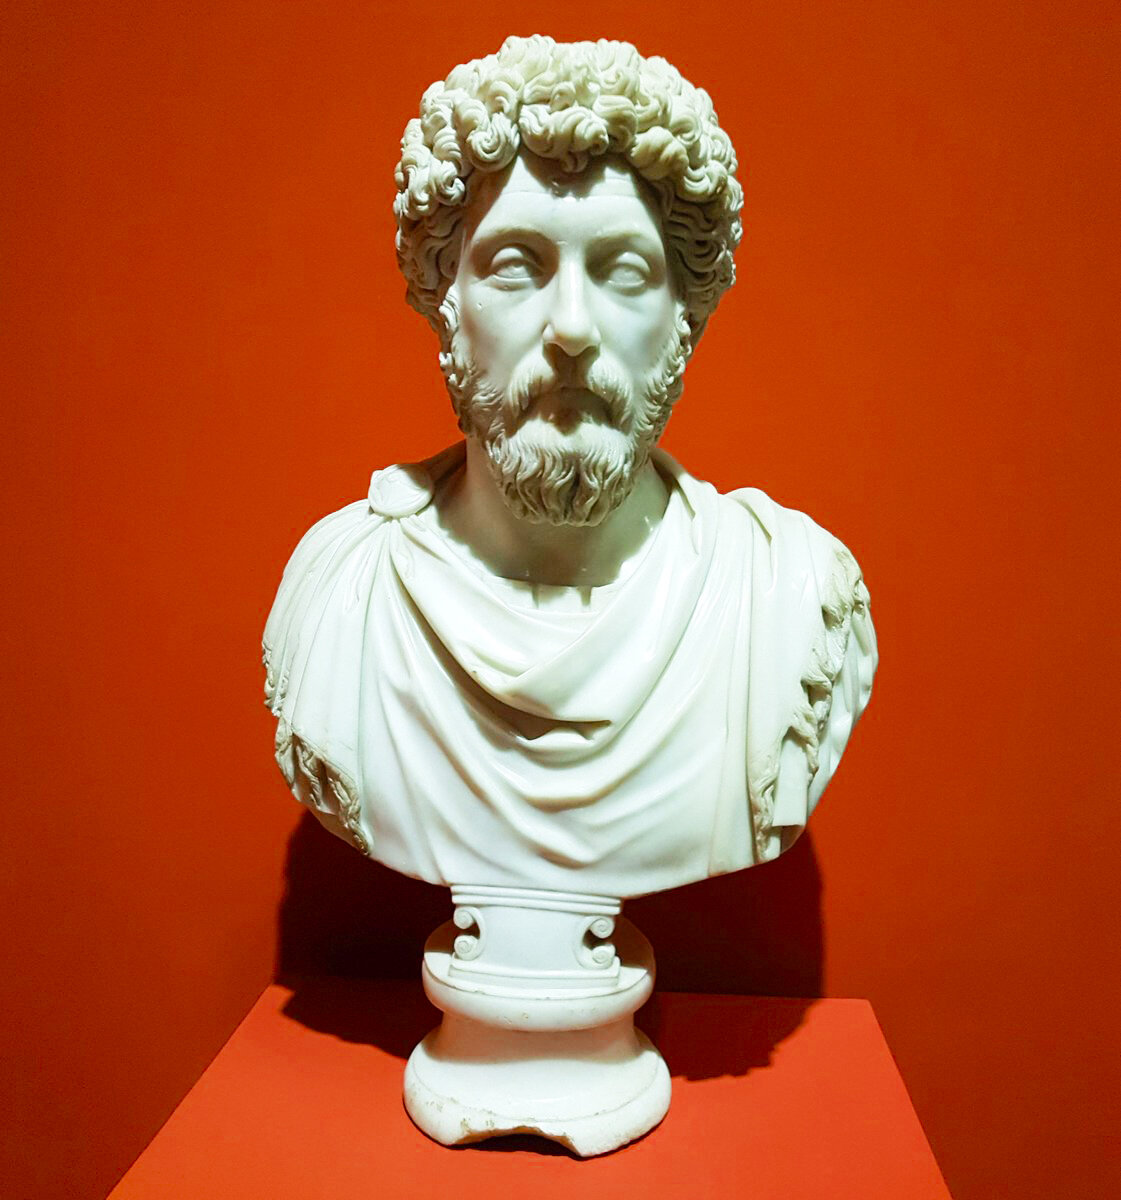  Биография  Марк Аврелий, римский император с 161 по 180 год нашей эры, известен не только своим политическим лидерством, но и глубокими философскими размышлениями.